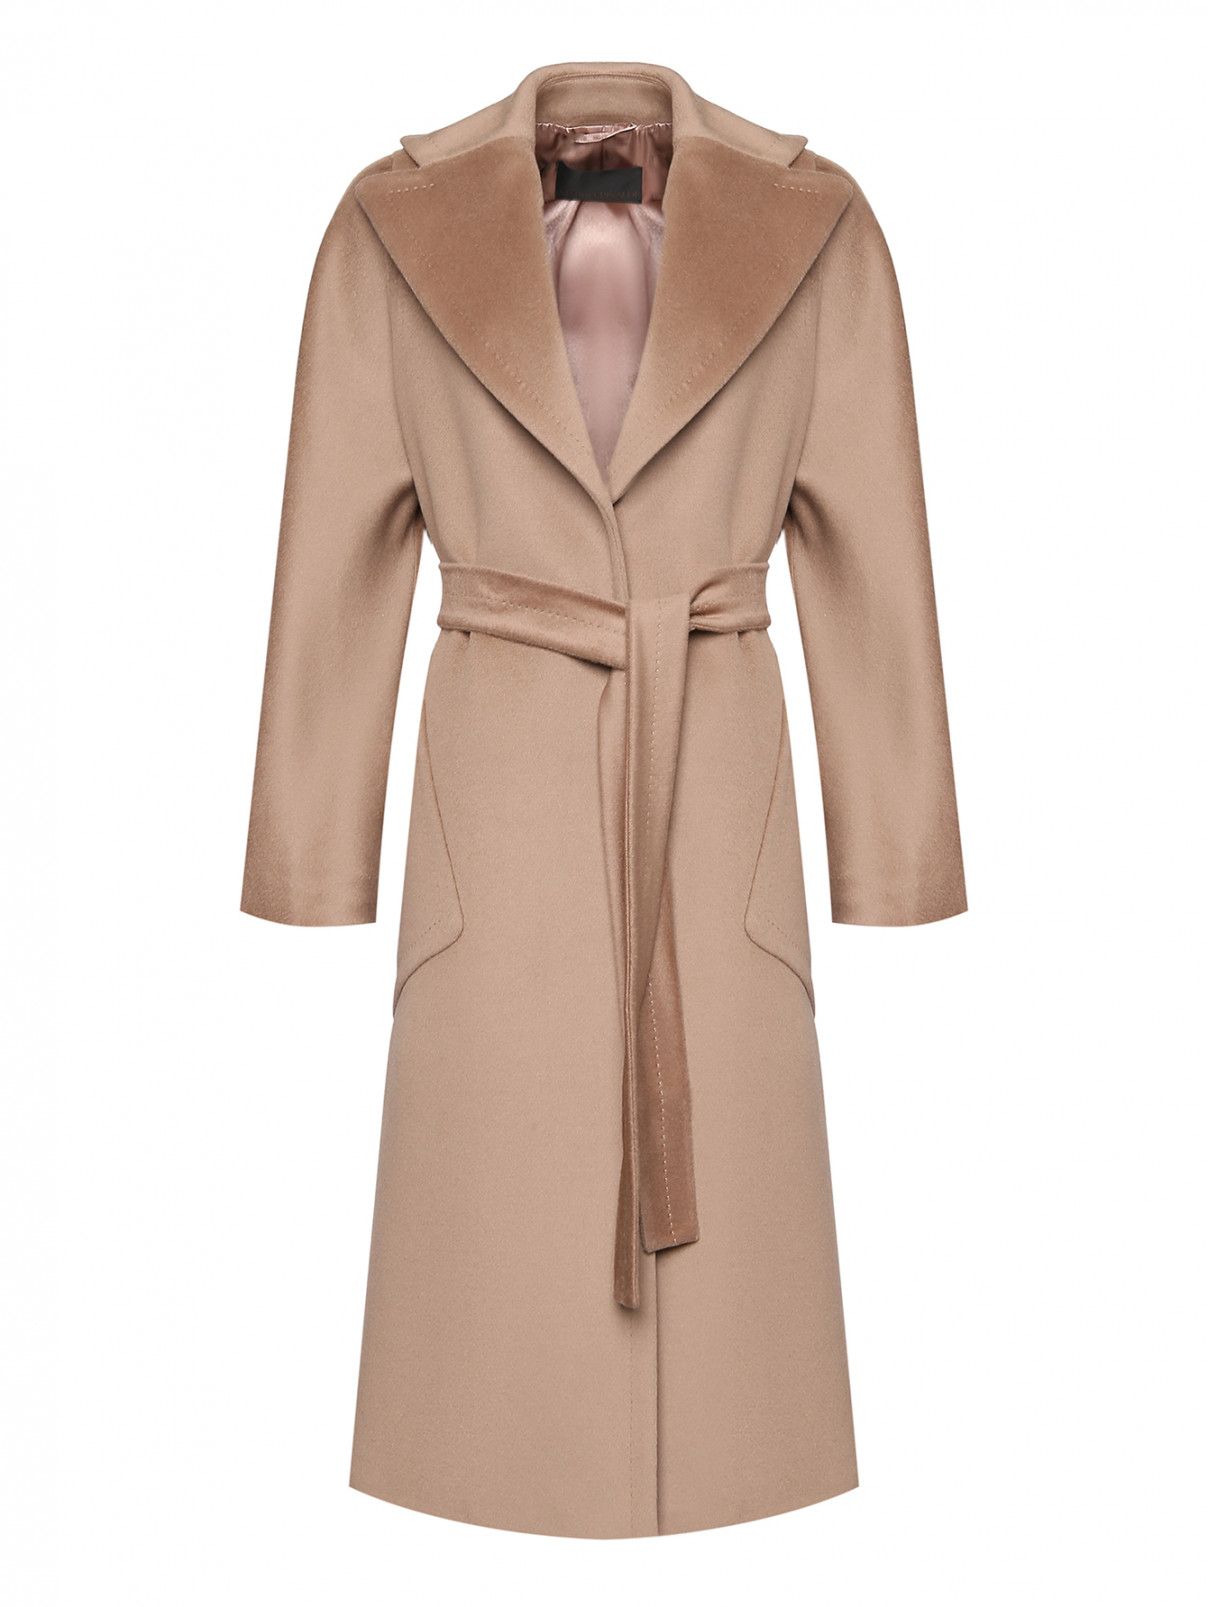 Пальто шерстяное с накладными карманами Marina Rinaldi  –  Общий вид  – Цвет:  Бежевый